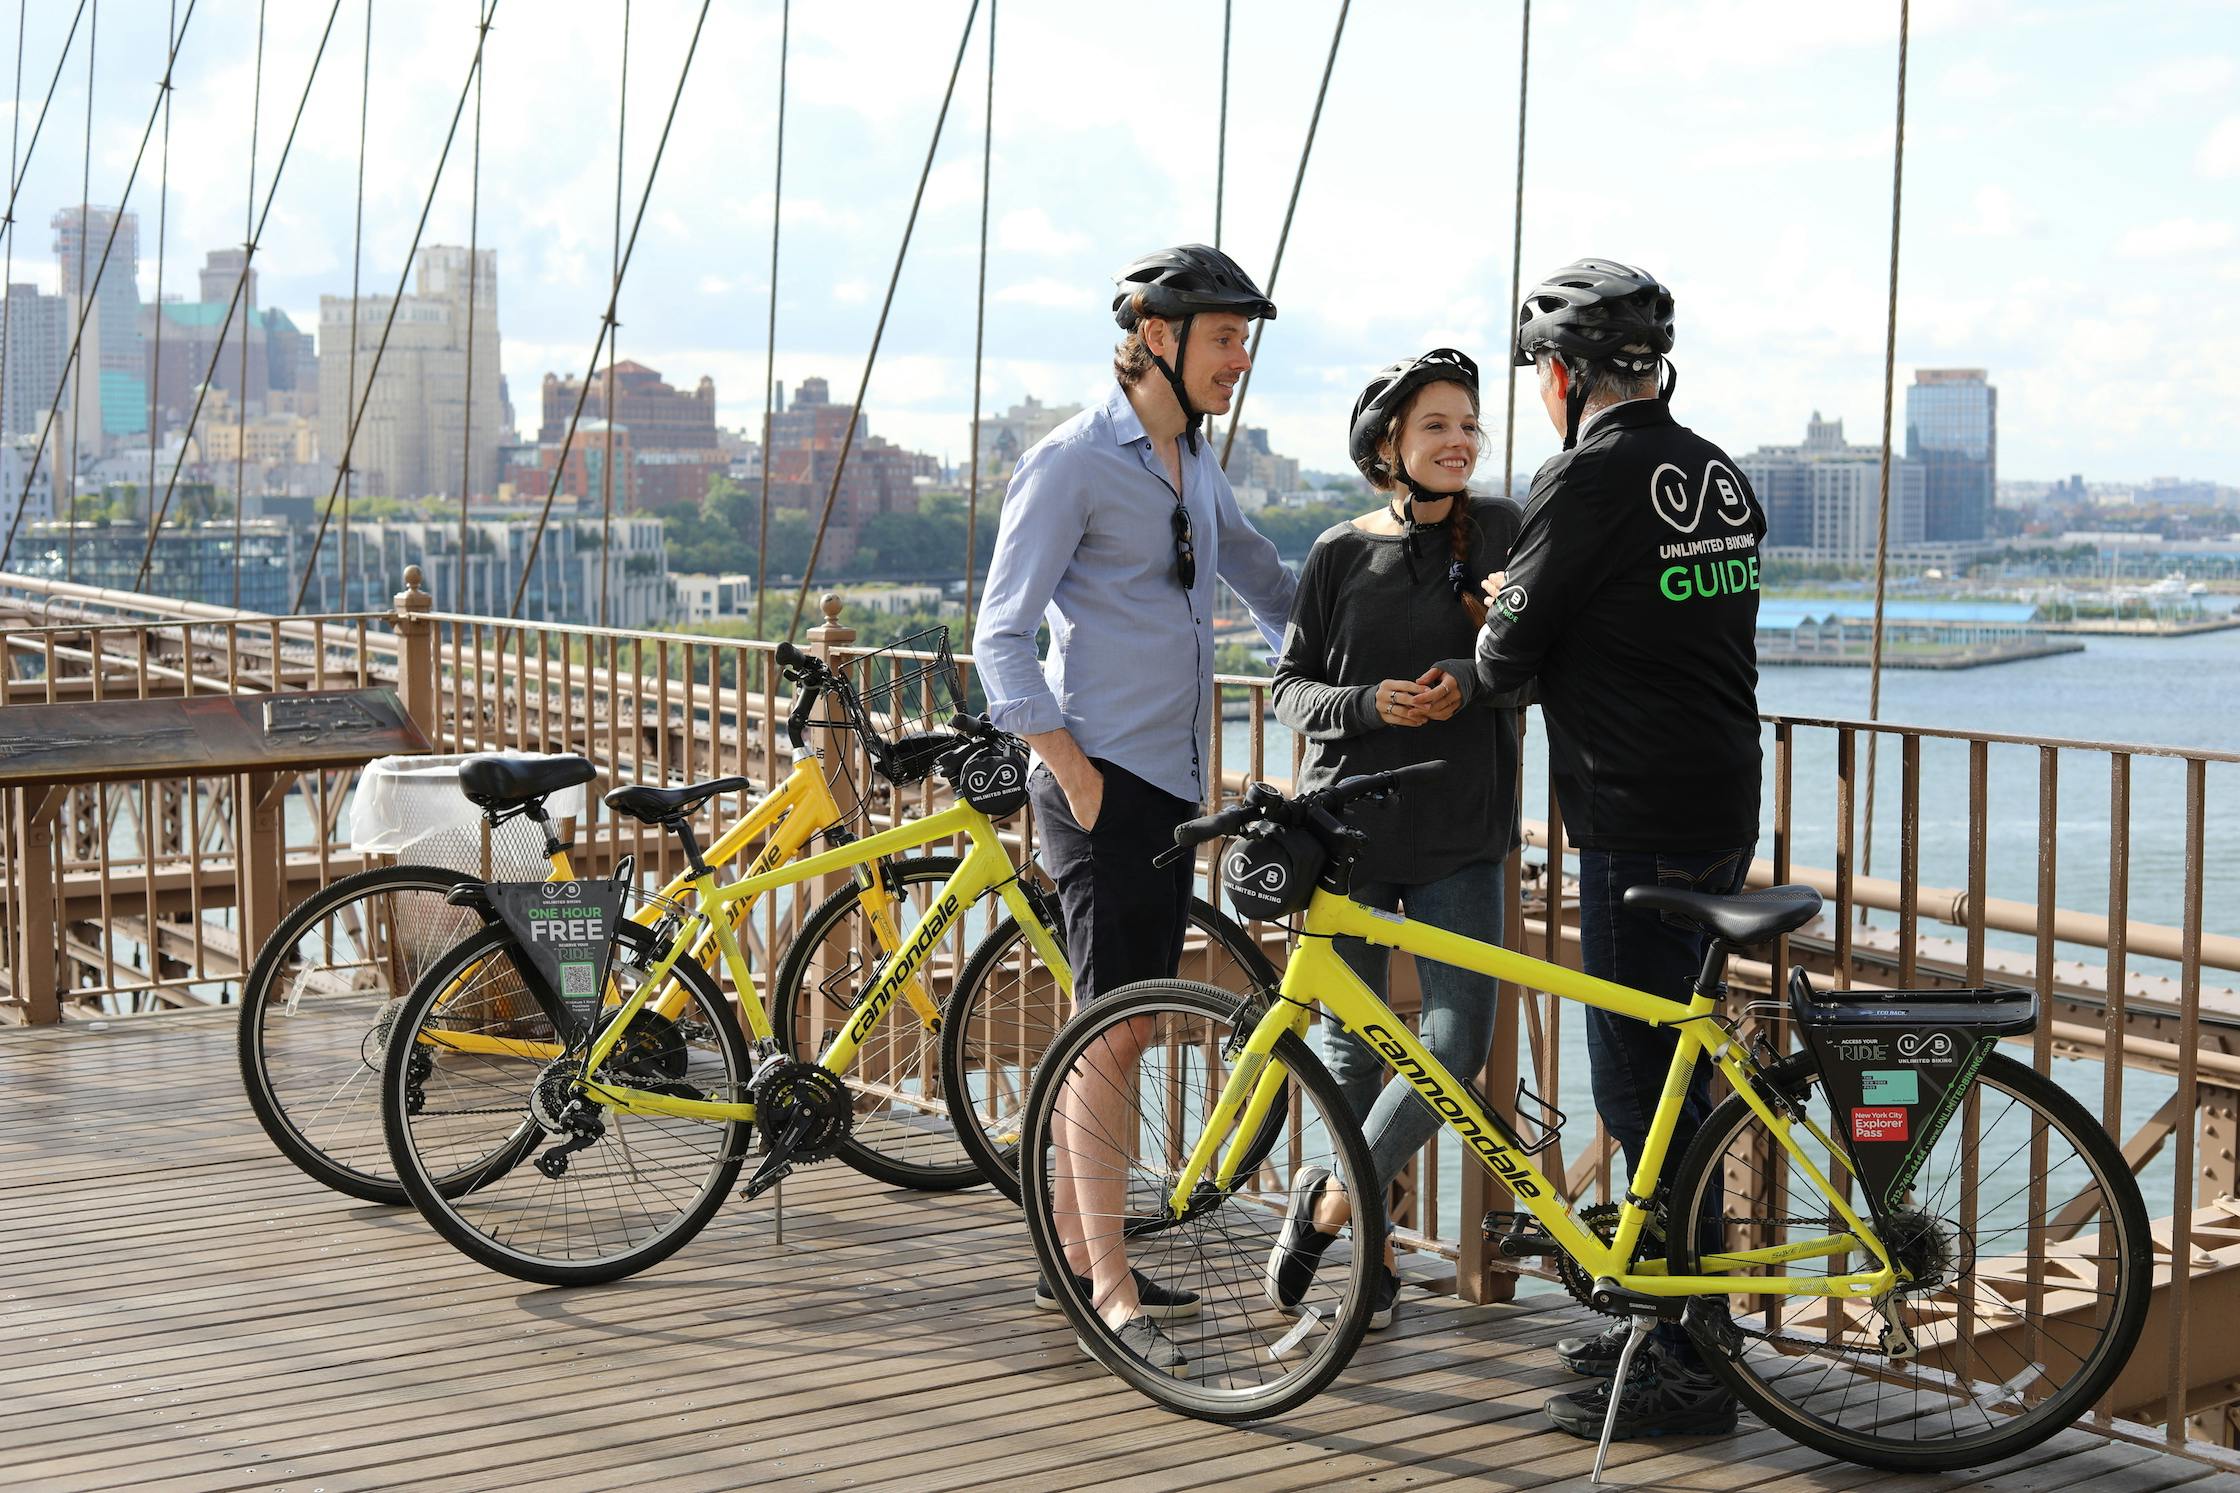 Tour en bicicleta por el puente de Brooklyn